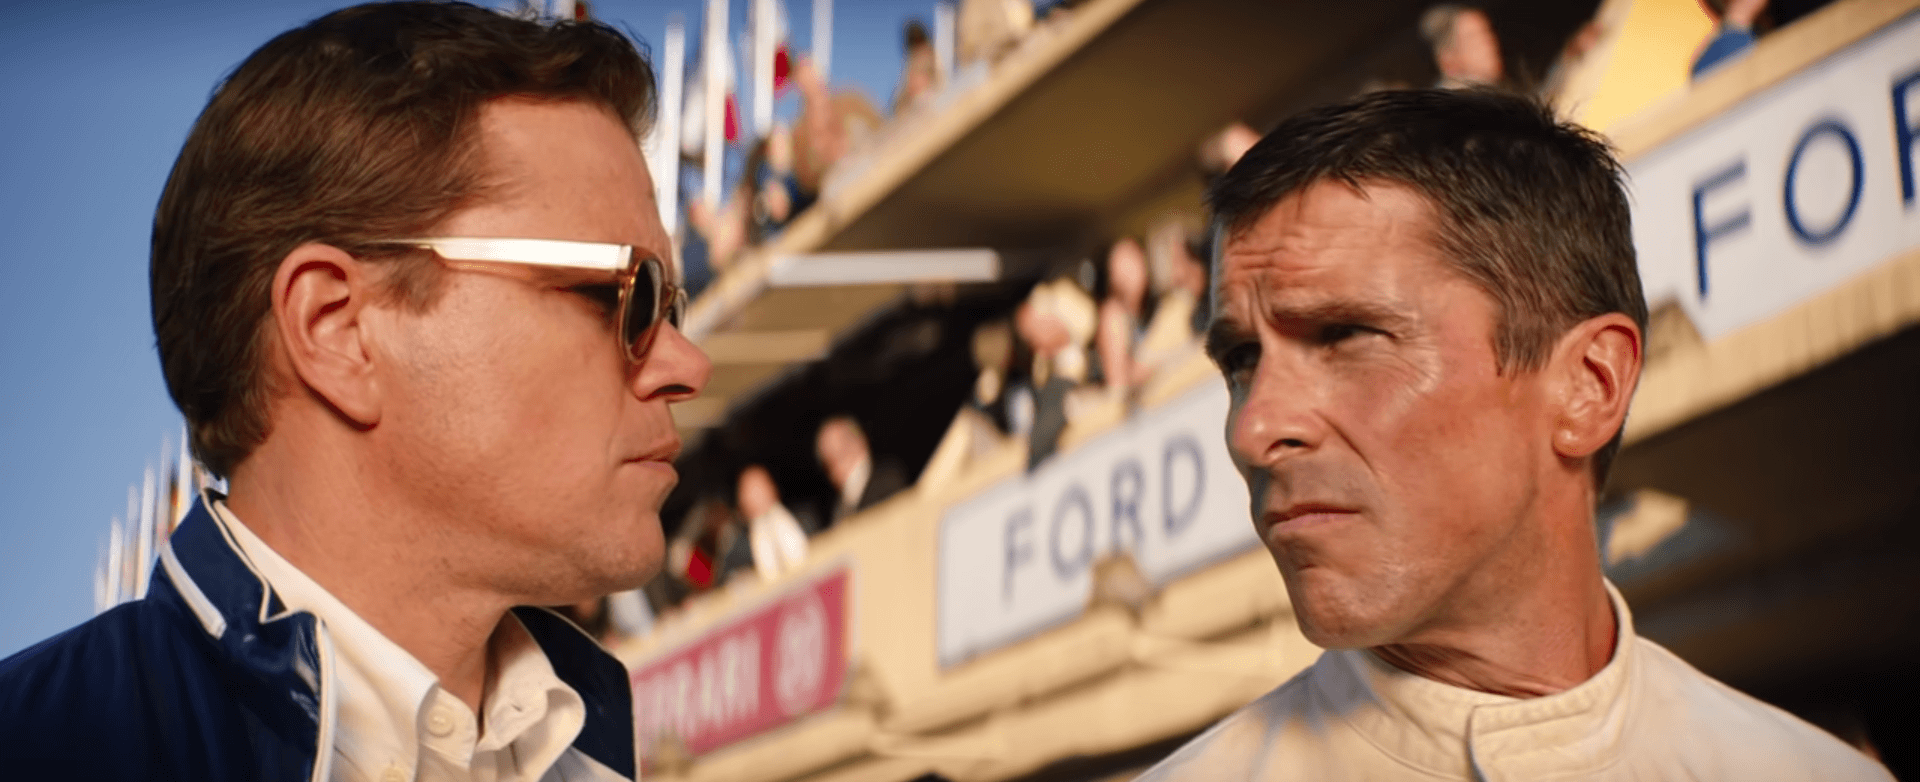 Ford V Ferrari (2019)-Hd Image-Christian Bale-Matt Damon